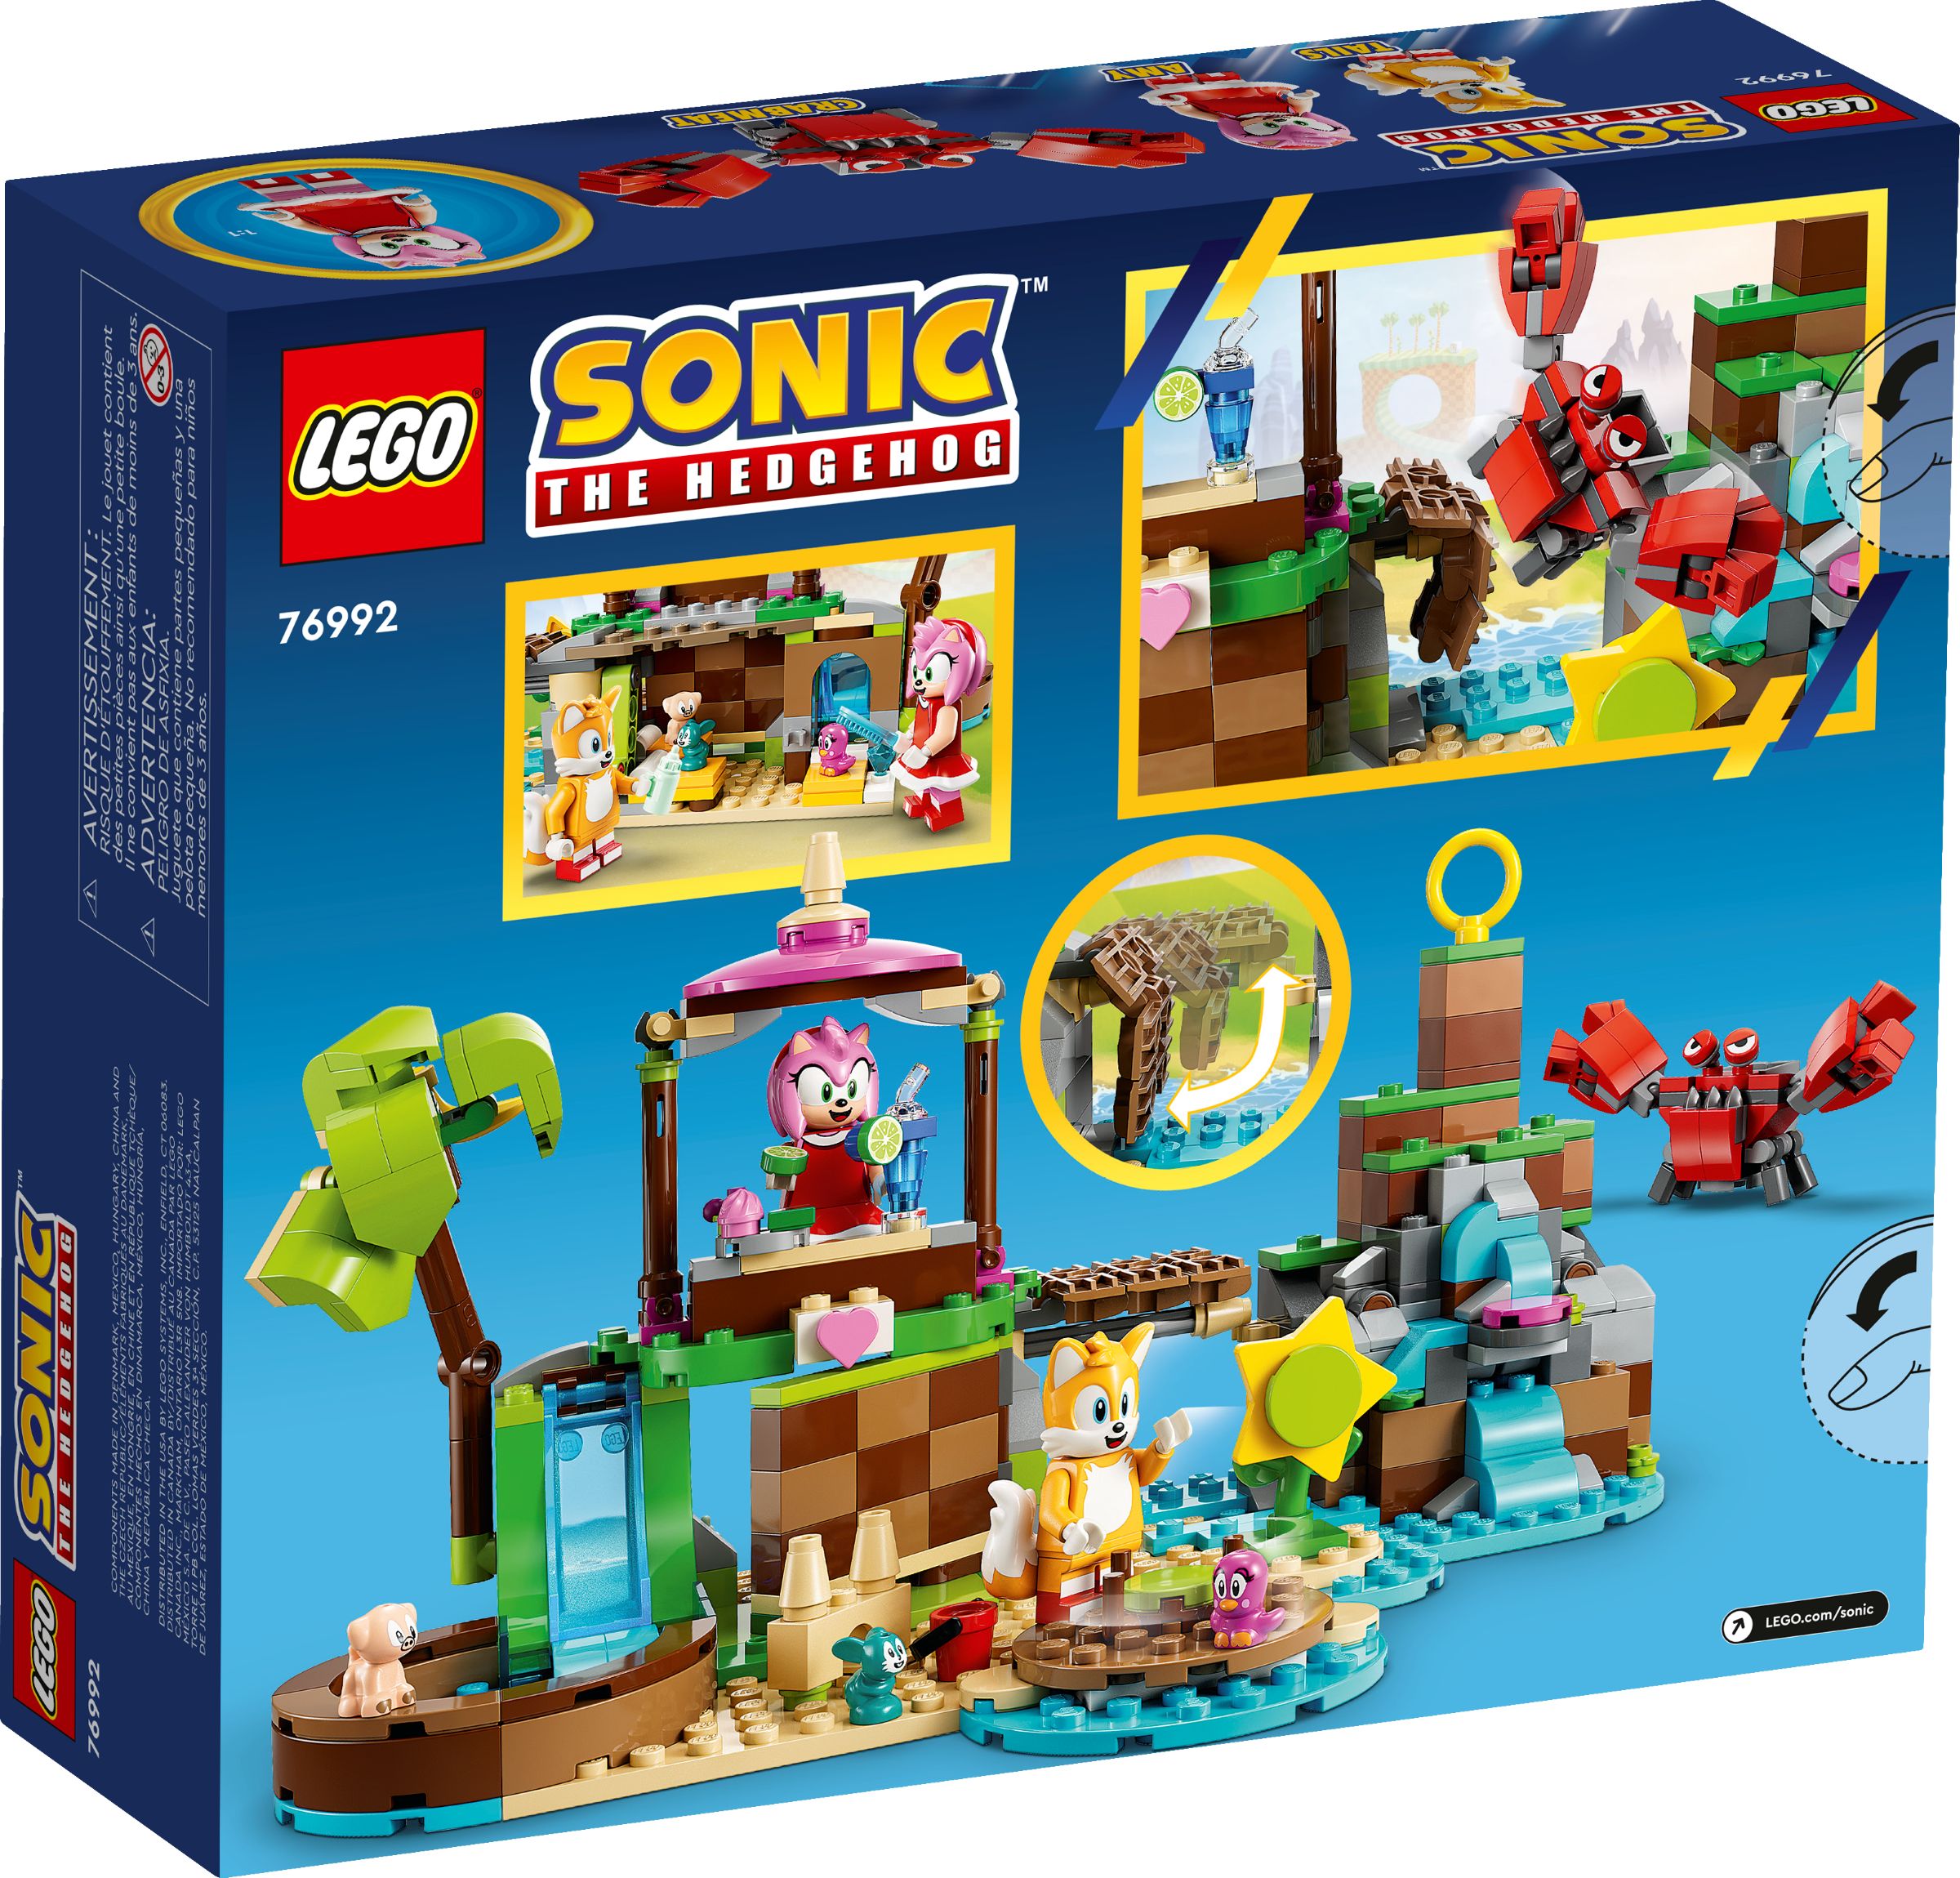 LEGO Sonic the Hedgehog 76992 Amys Tierrettungsinsel LEGO_76992_alt7.jpg